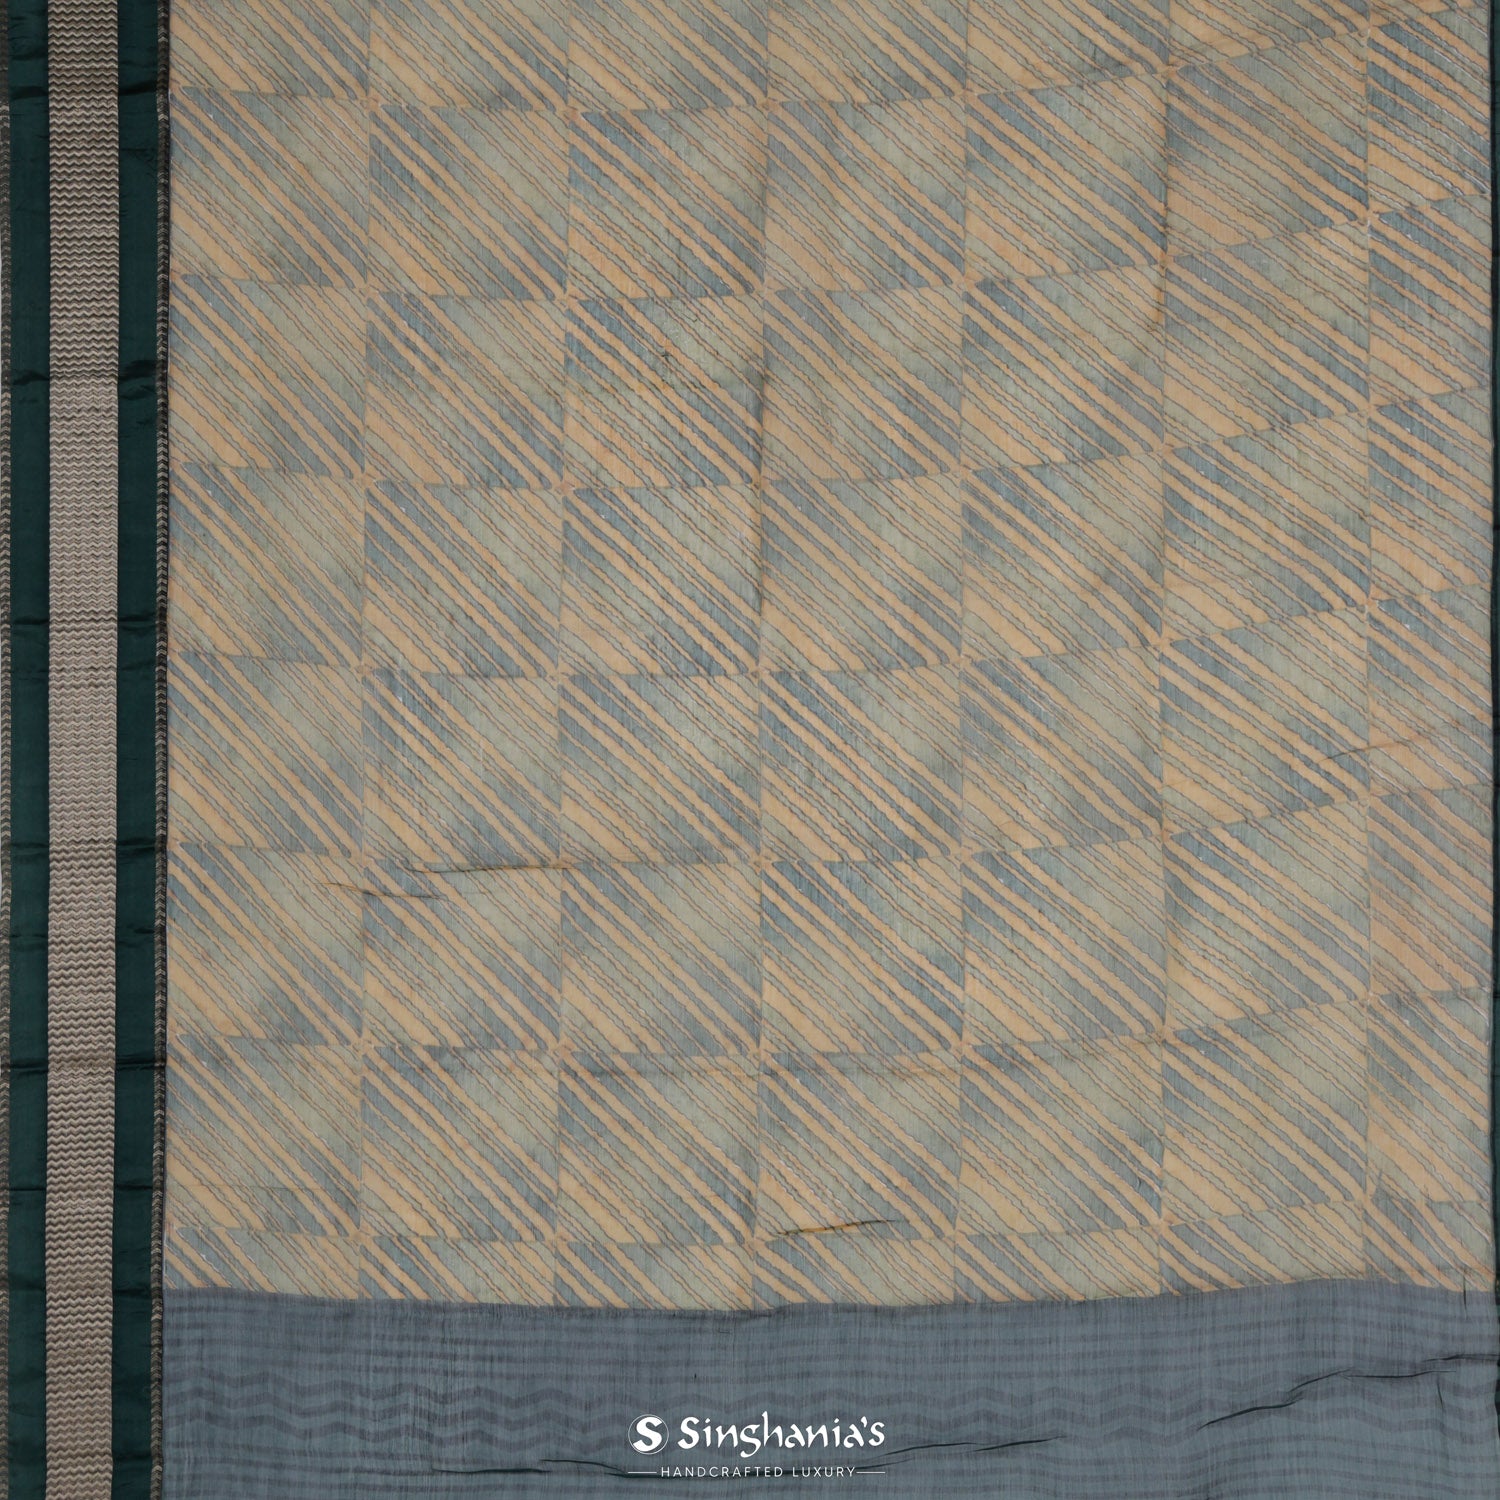 Greenish-Yellow Printed Maheshwari Saree With Checks And Stripes Pattern